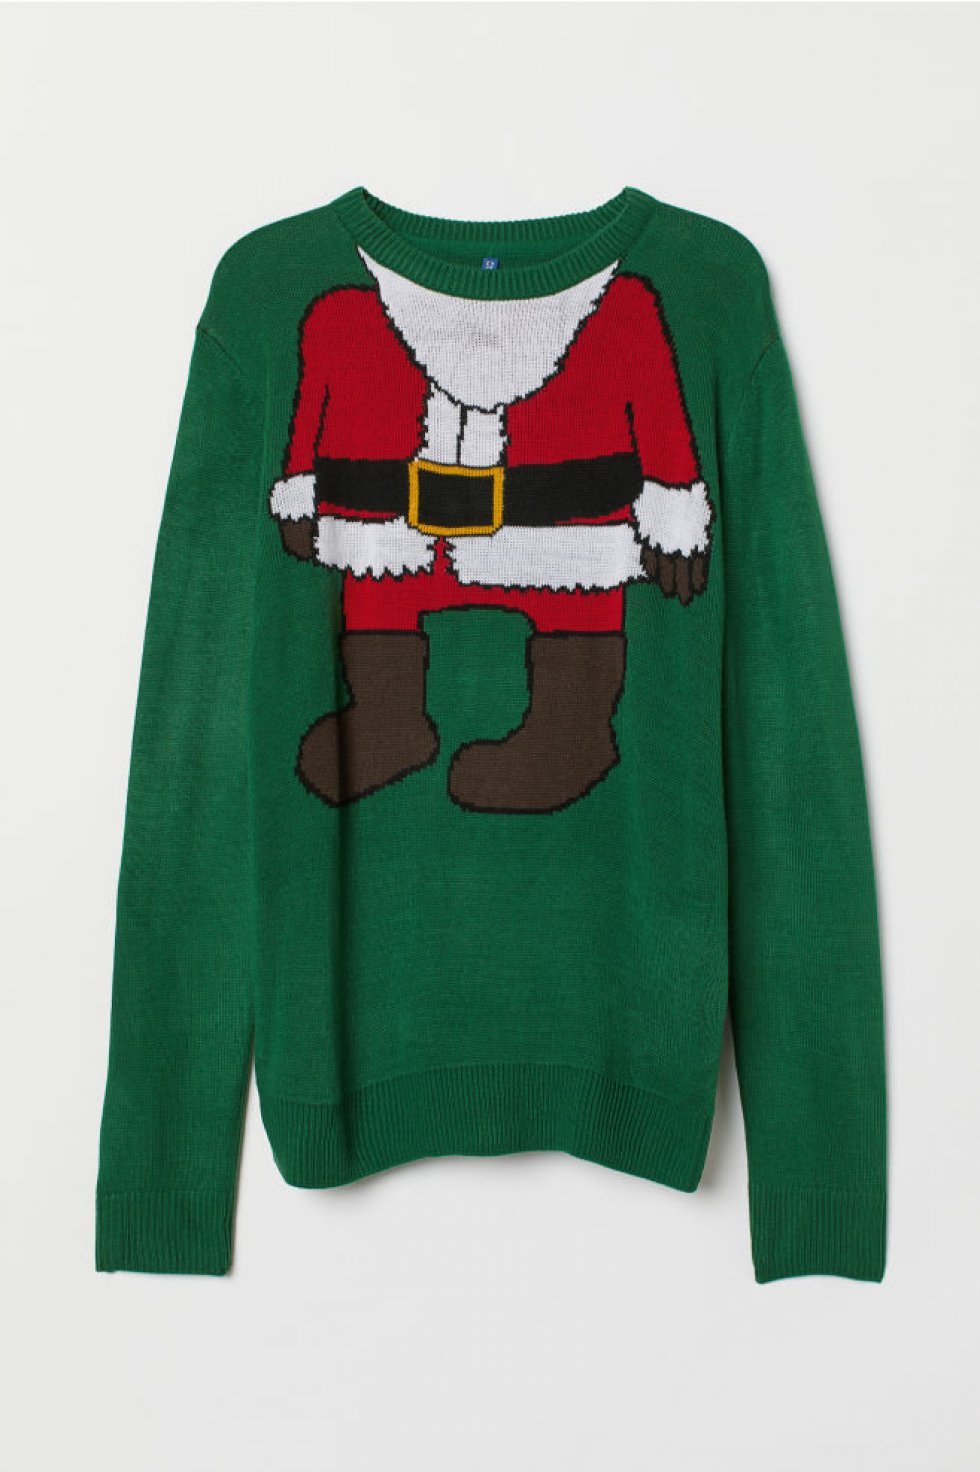 H&M - Strikket trøje, 79,95 kroner.  - Klar til julefrokost: 25 (grimme) juletrøjer 